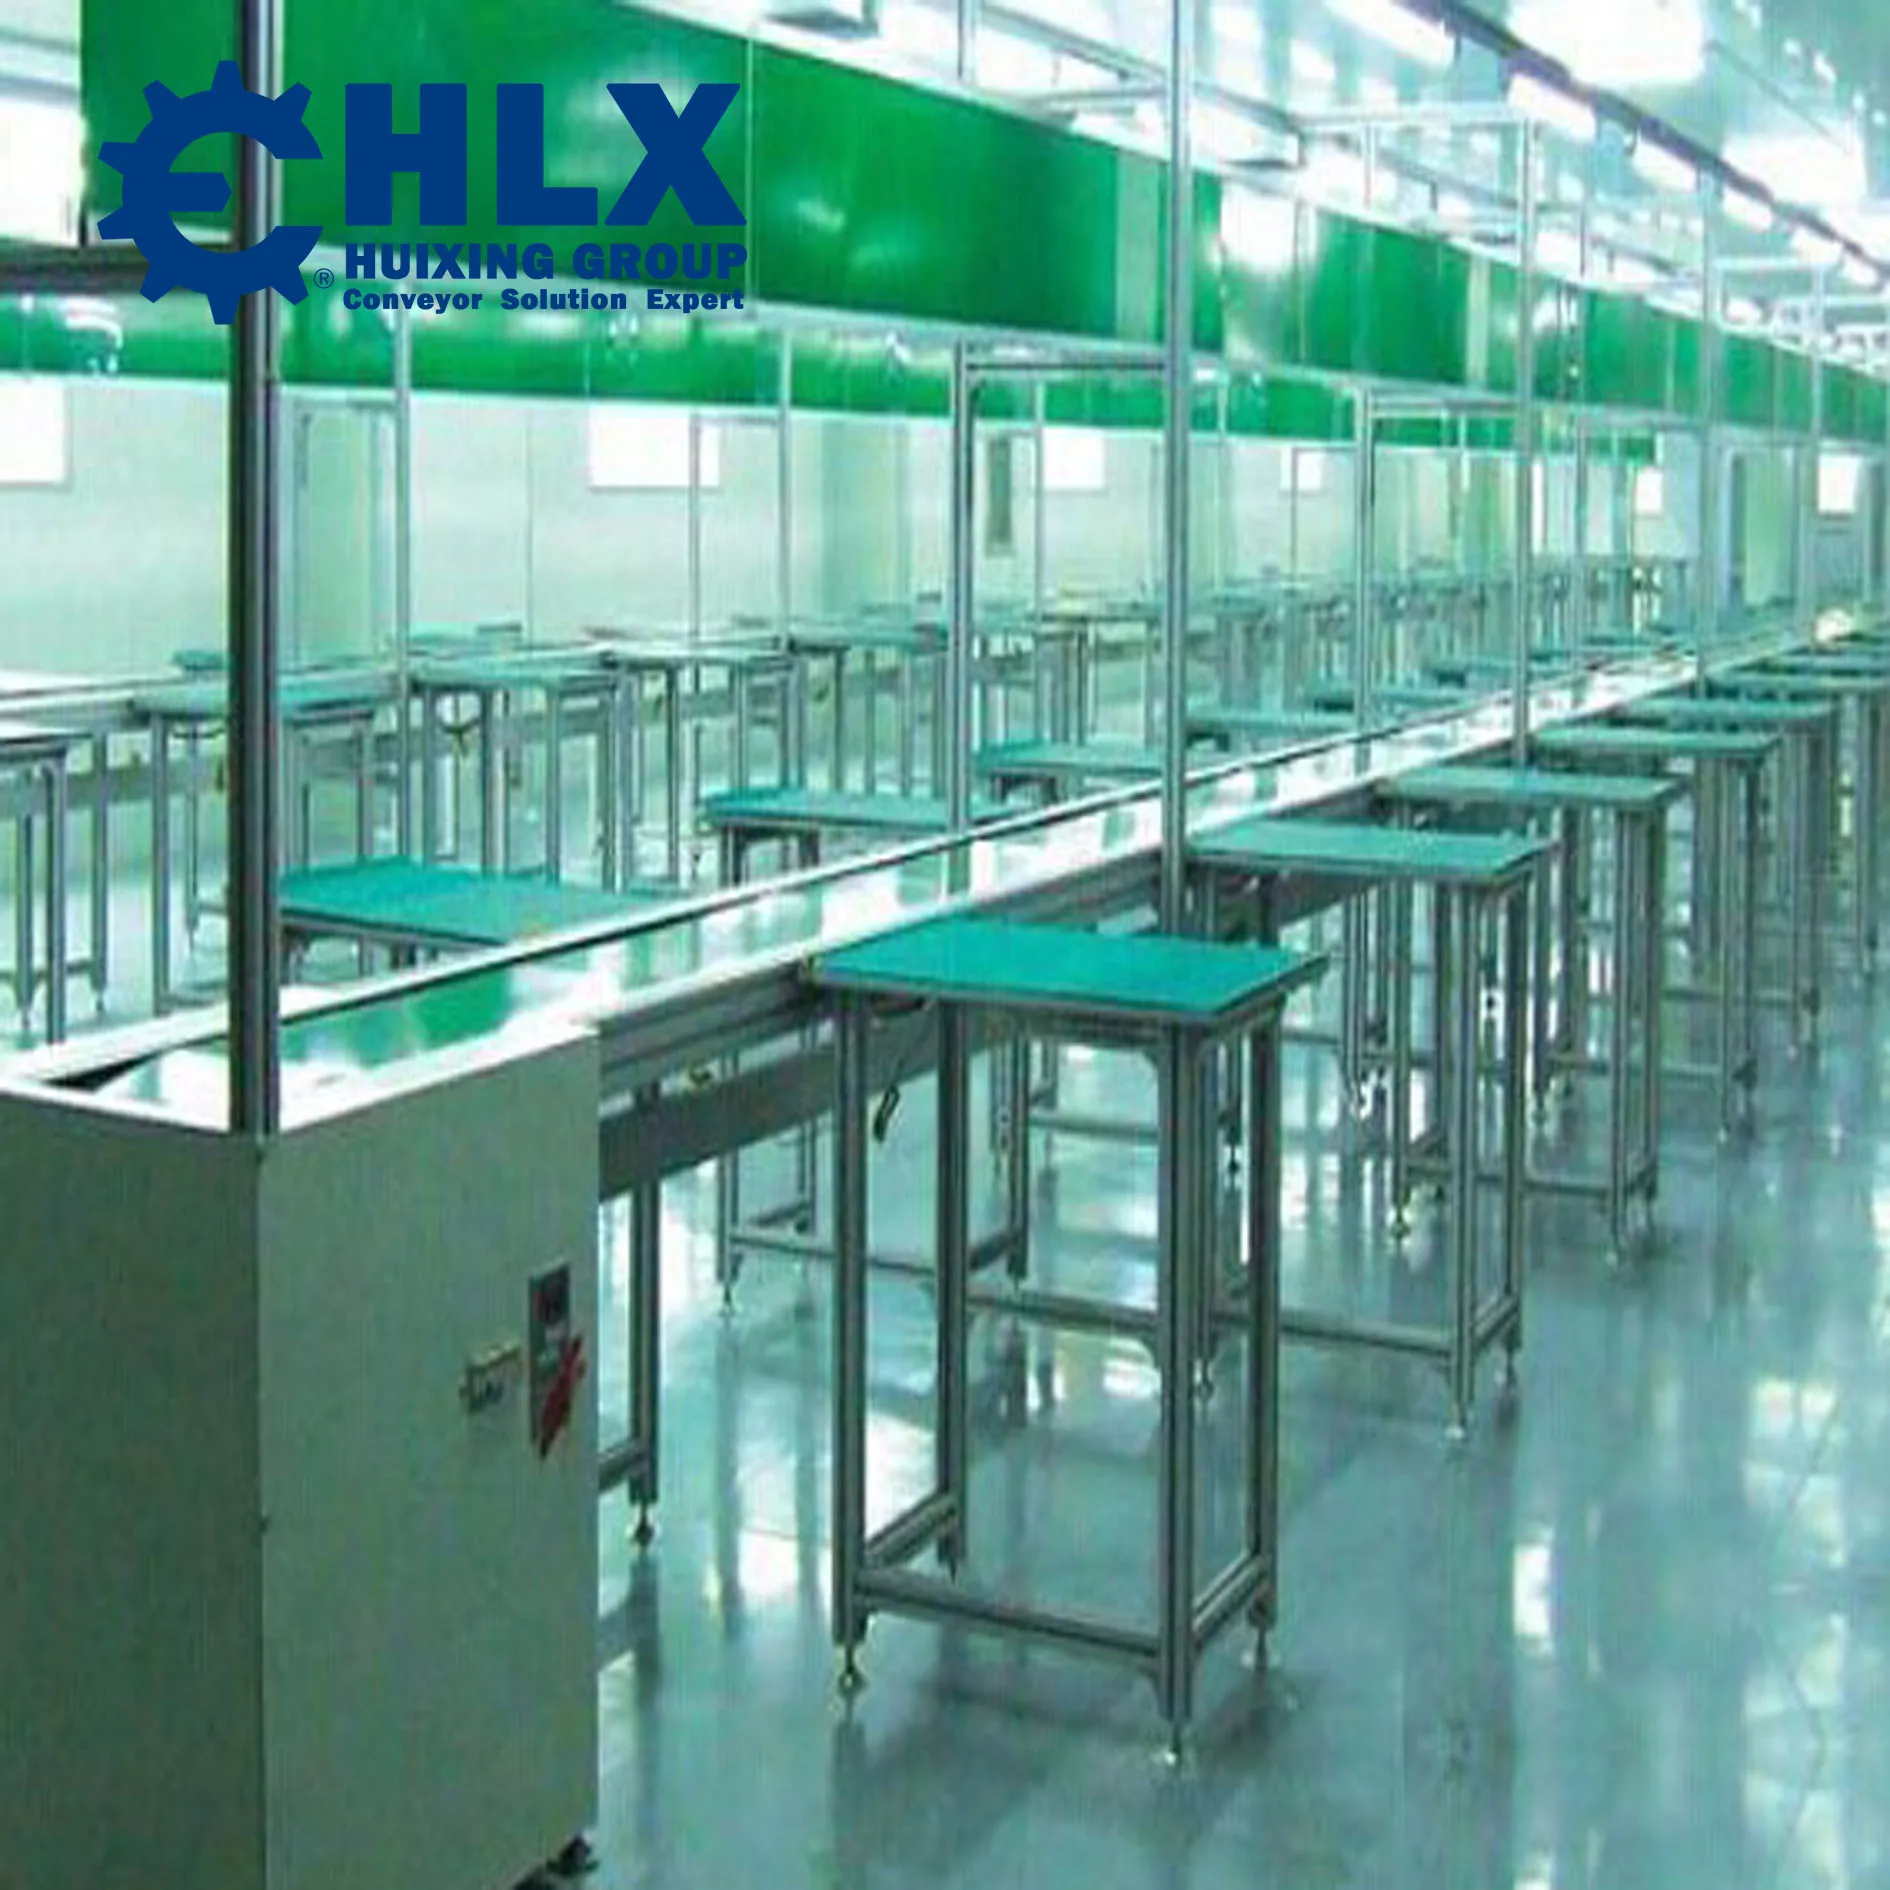 LED light / LED lamp / LED bulb assembly line in HLX